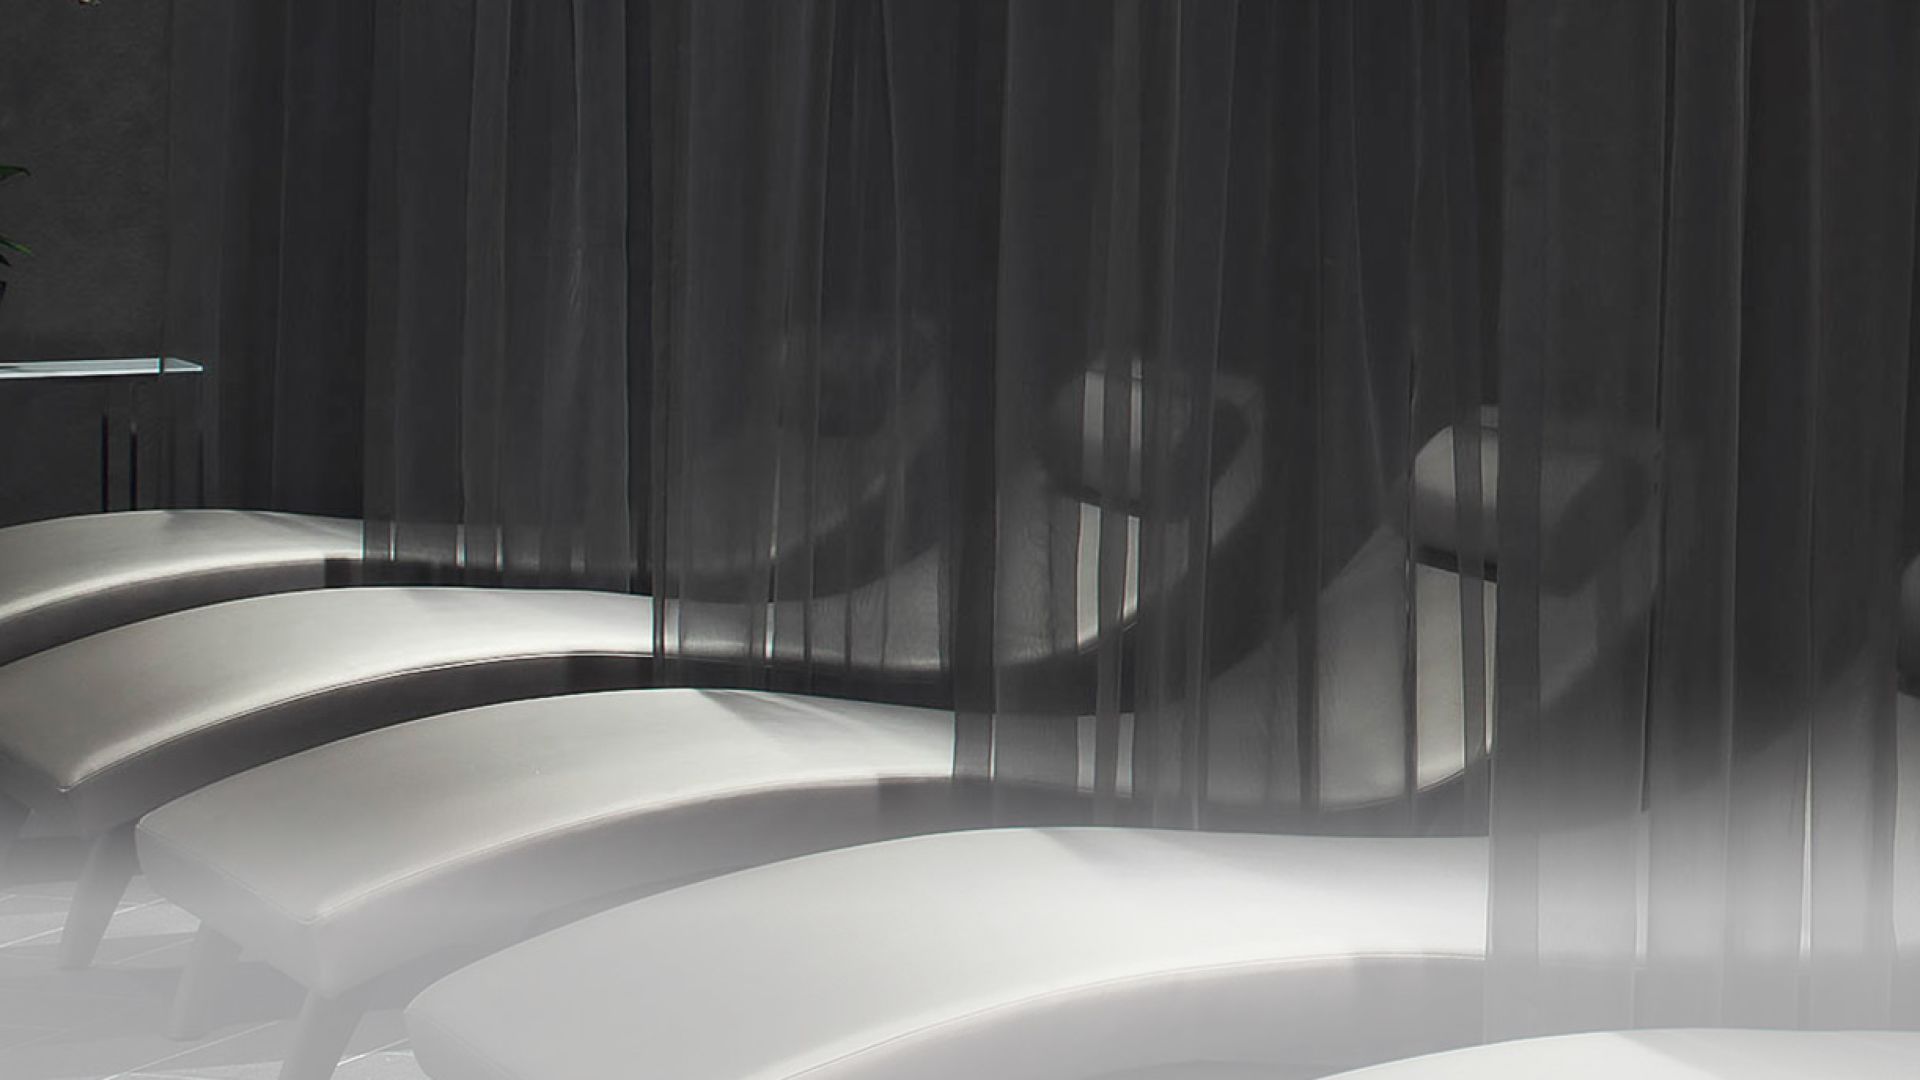 A White Bathtub With A Black Curtain